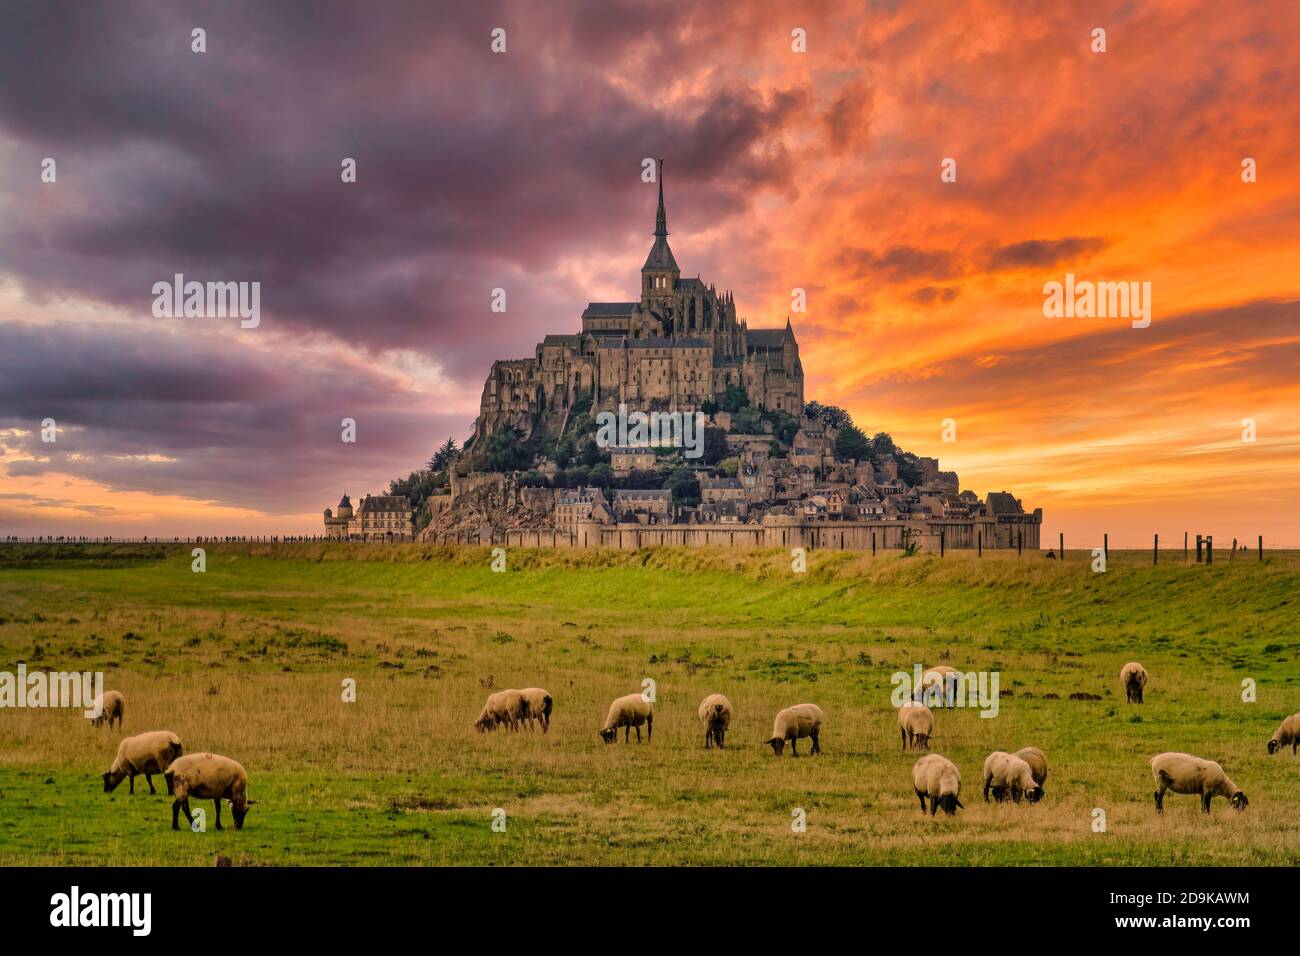 Mont Saint Michel, Sonnenuntergang, spektakulaere Wolken, Schafe auf Weide, UNESCO-Weltkulturerbe, Normandie, Frankreich, Foto de stock